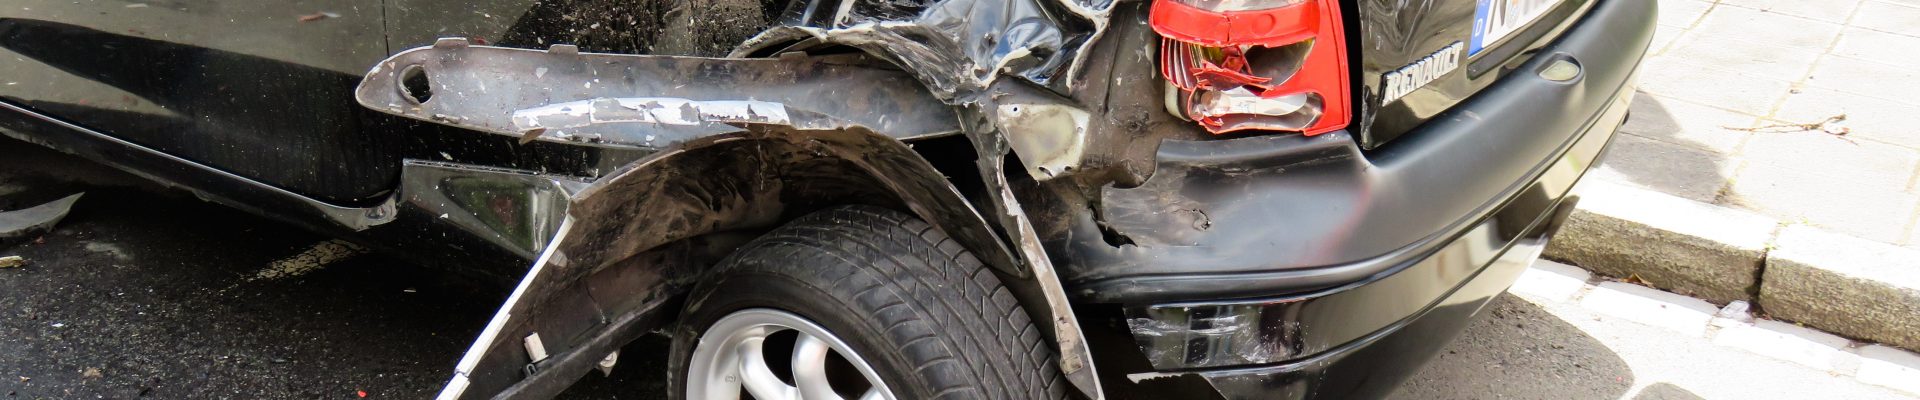 Schadenrecht - Streit mit Versicherung vermeiden - accident 1409005 - Themen-Radio